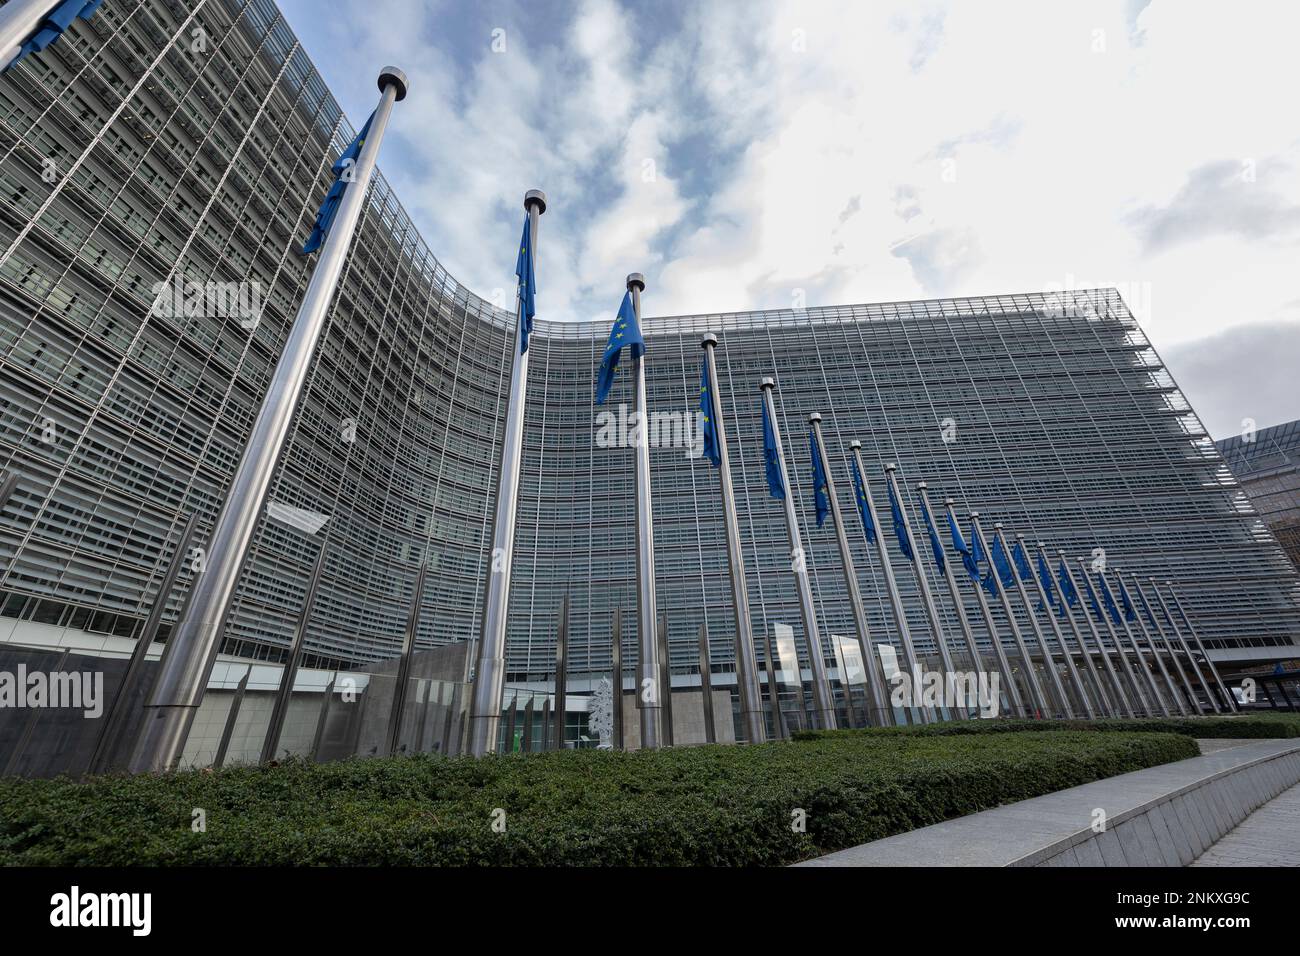 BRUXELLES, Belgio - 23 febbraio 2023: Edificio Berlaymont, sede della Commissione europea, con bandiere che soffiano nel vento davanti ad esso Foto Stock